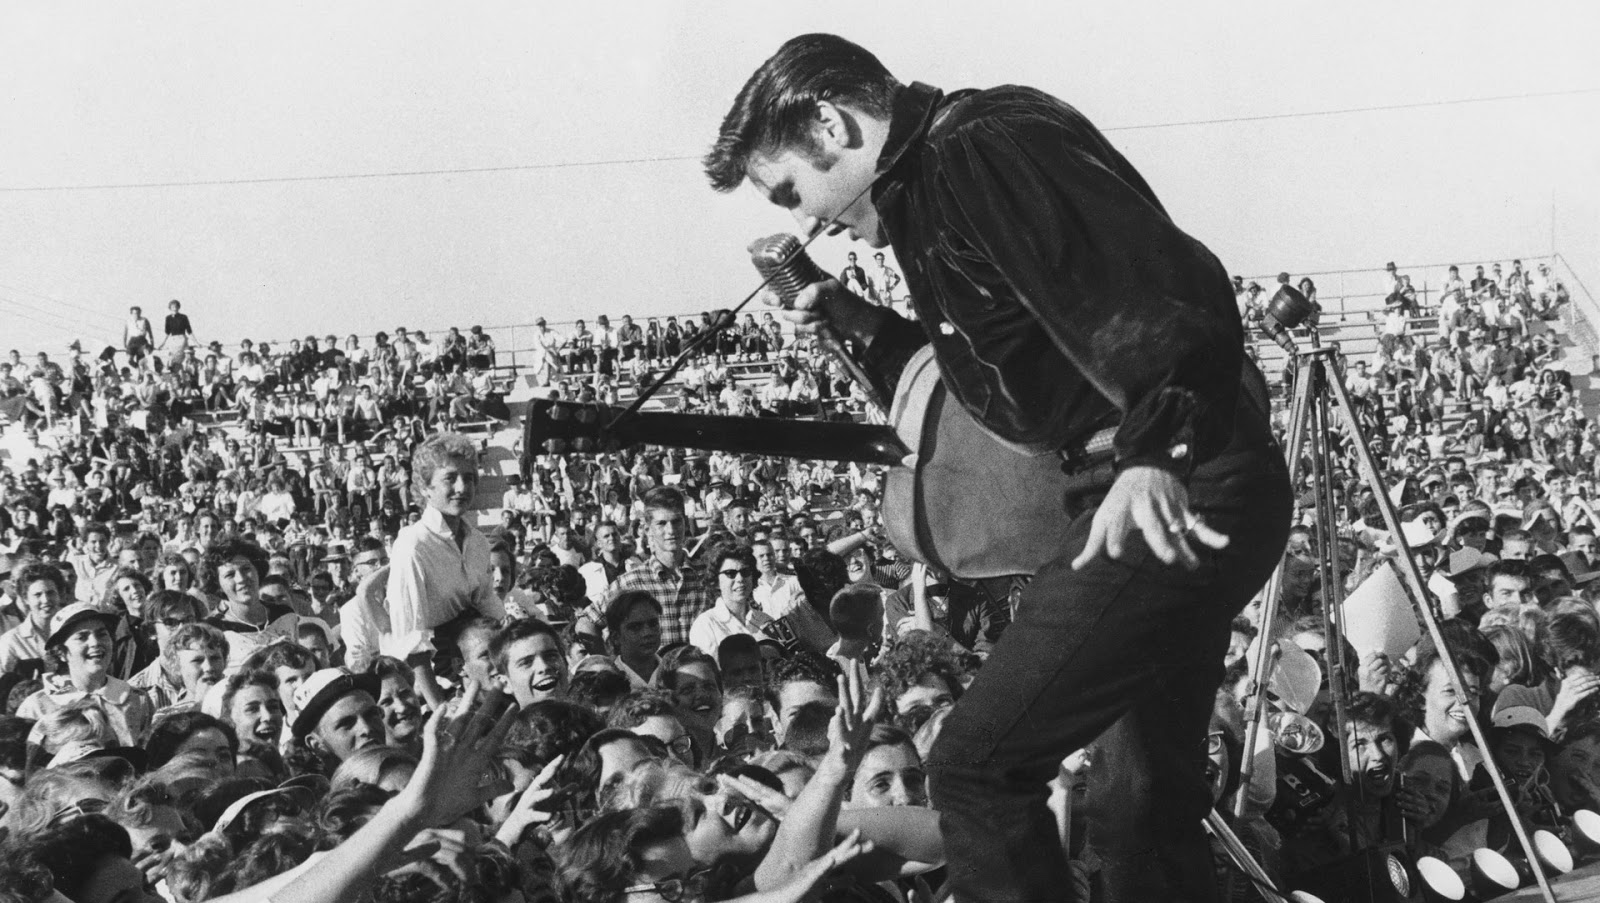 Elvis Presley crowd